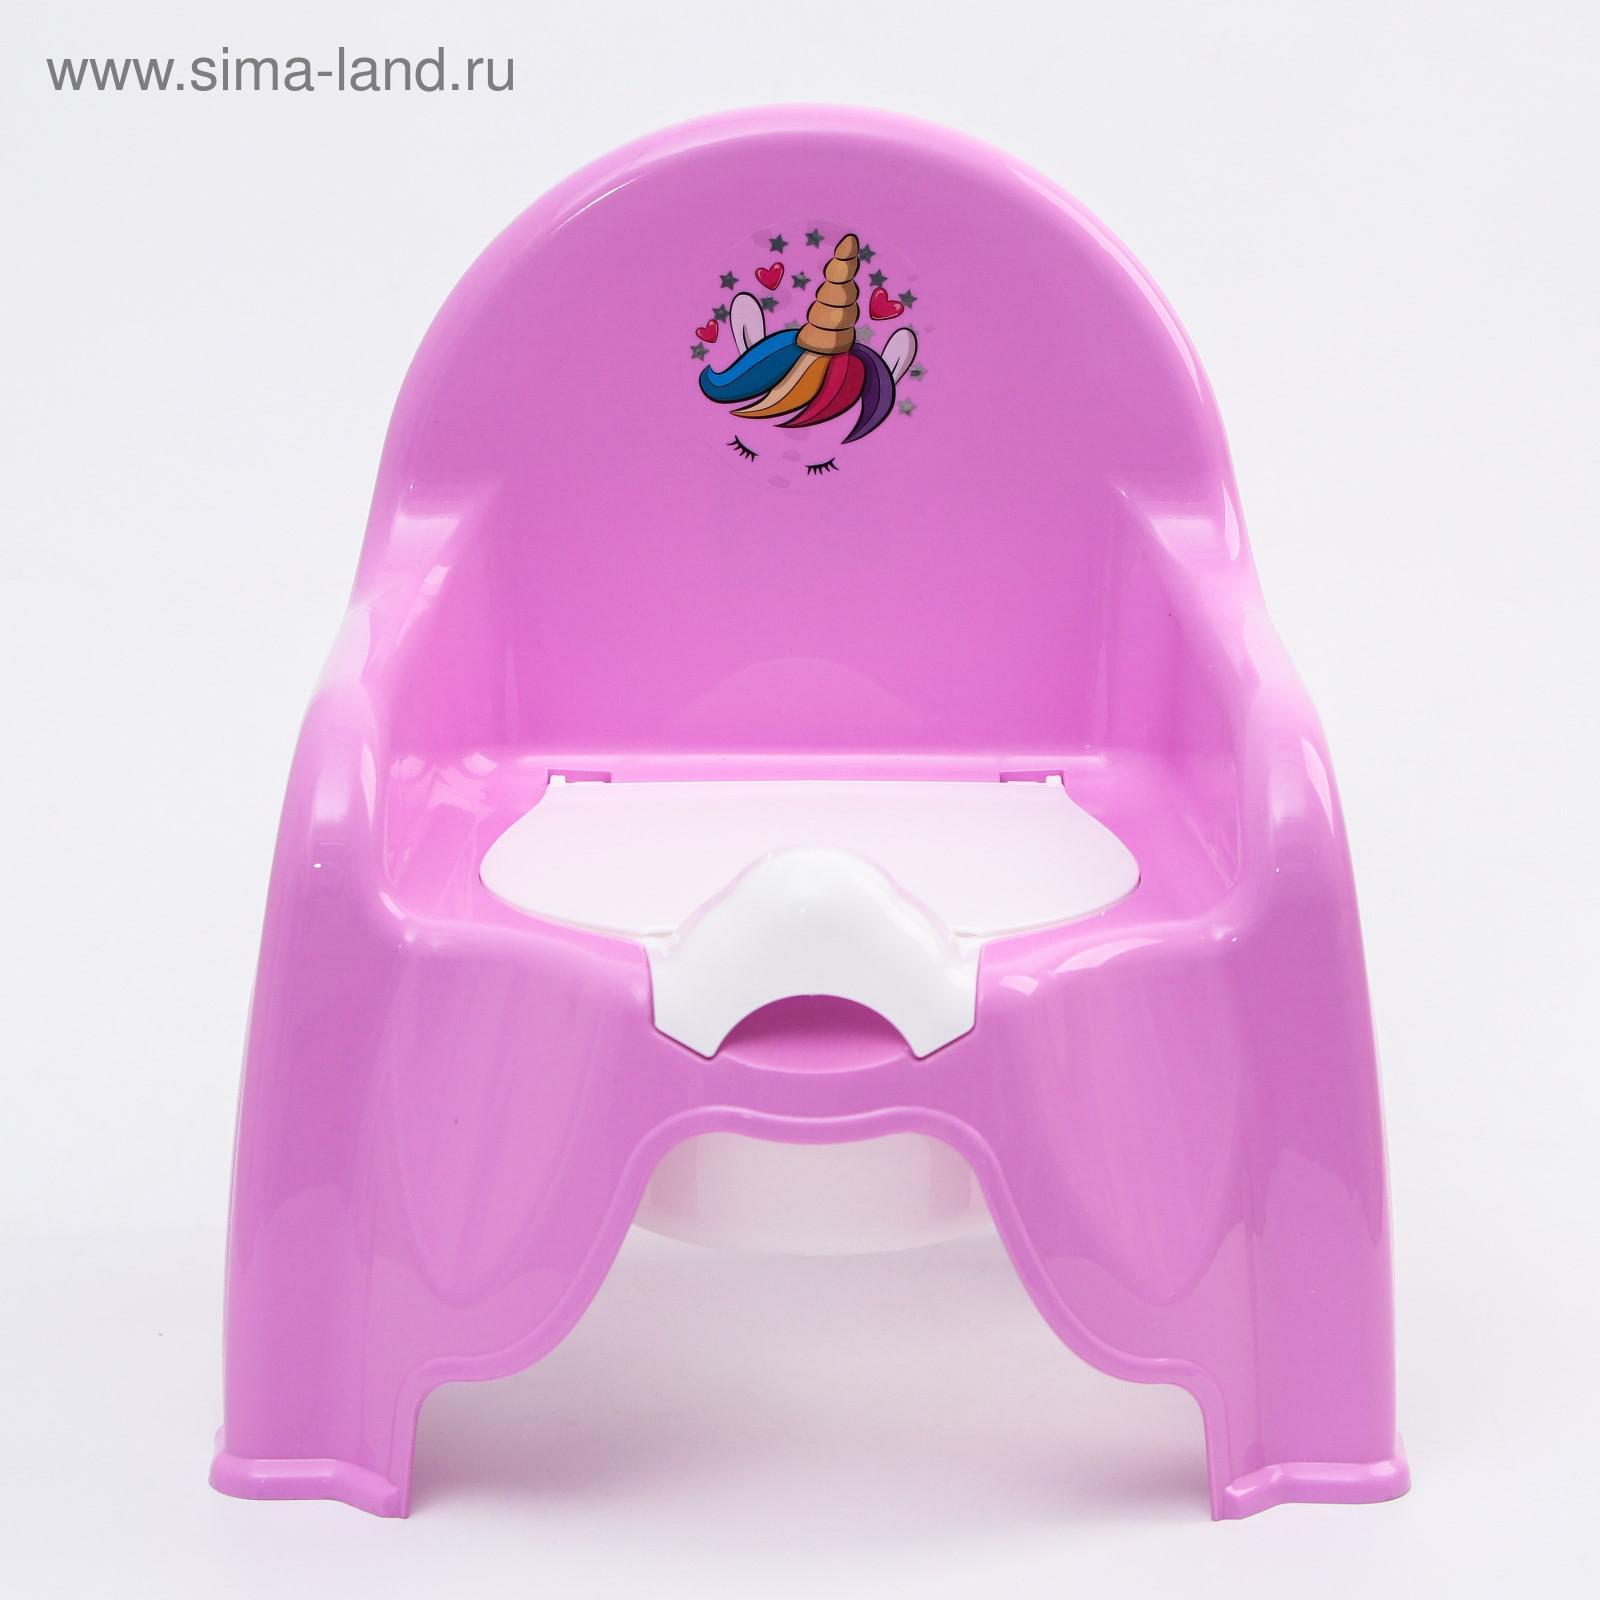 Горшок-стульчик детский м2596